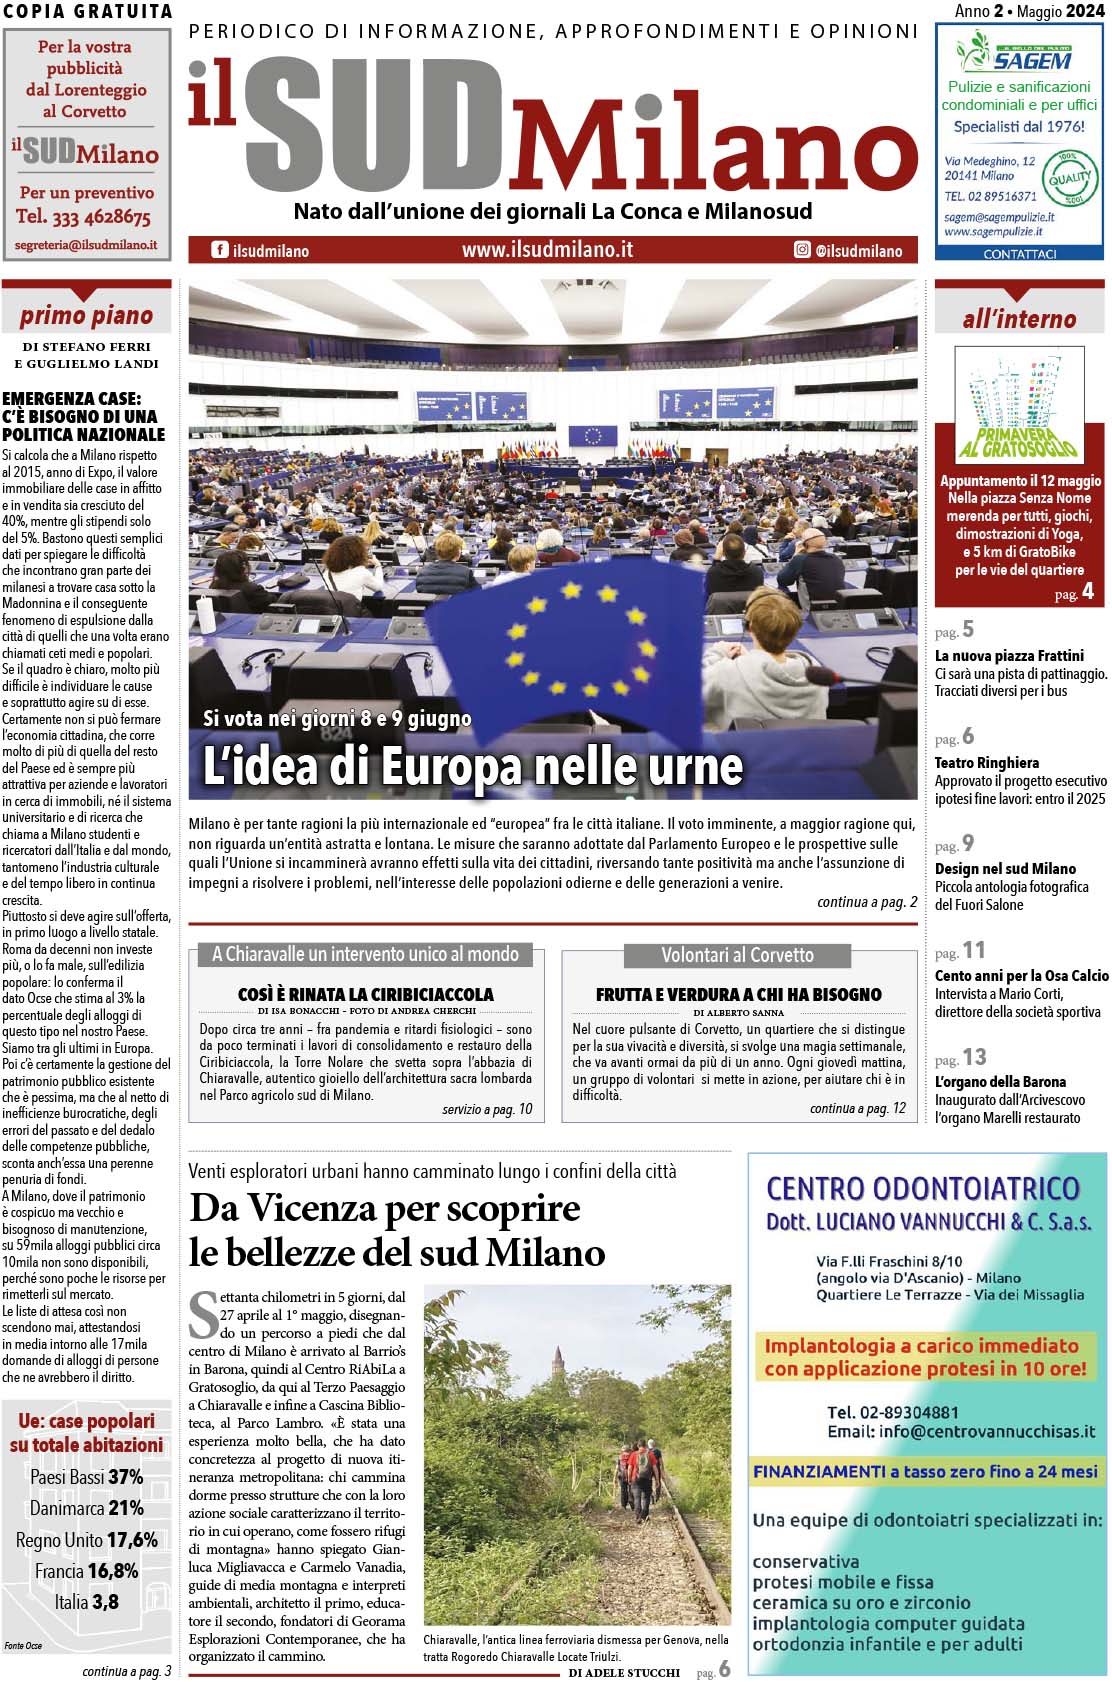 Prima pagina de il Sud Milano di maggio 2024 - L'idea di Europa nelle urne